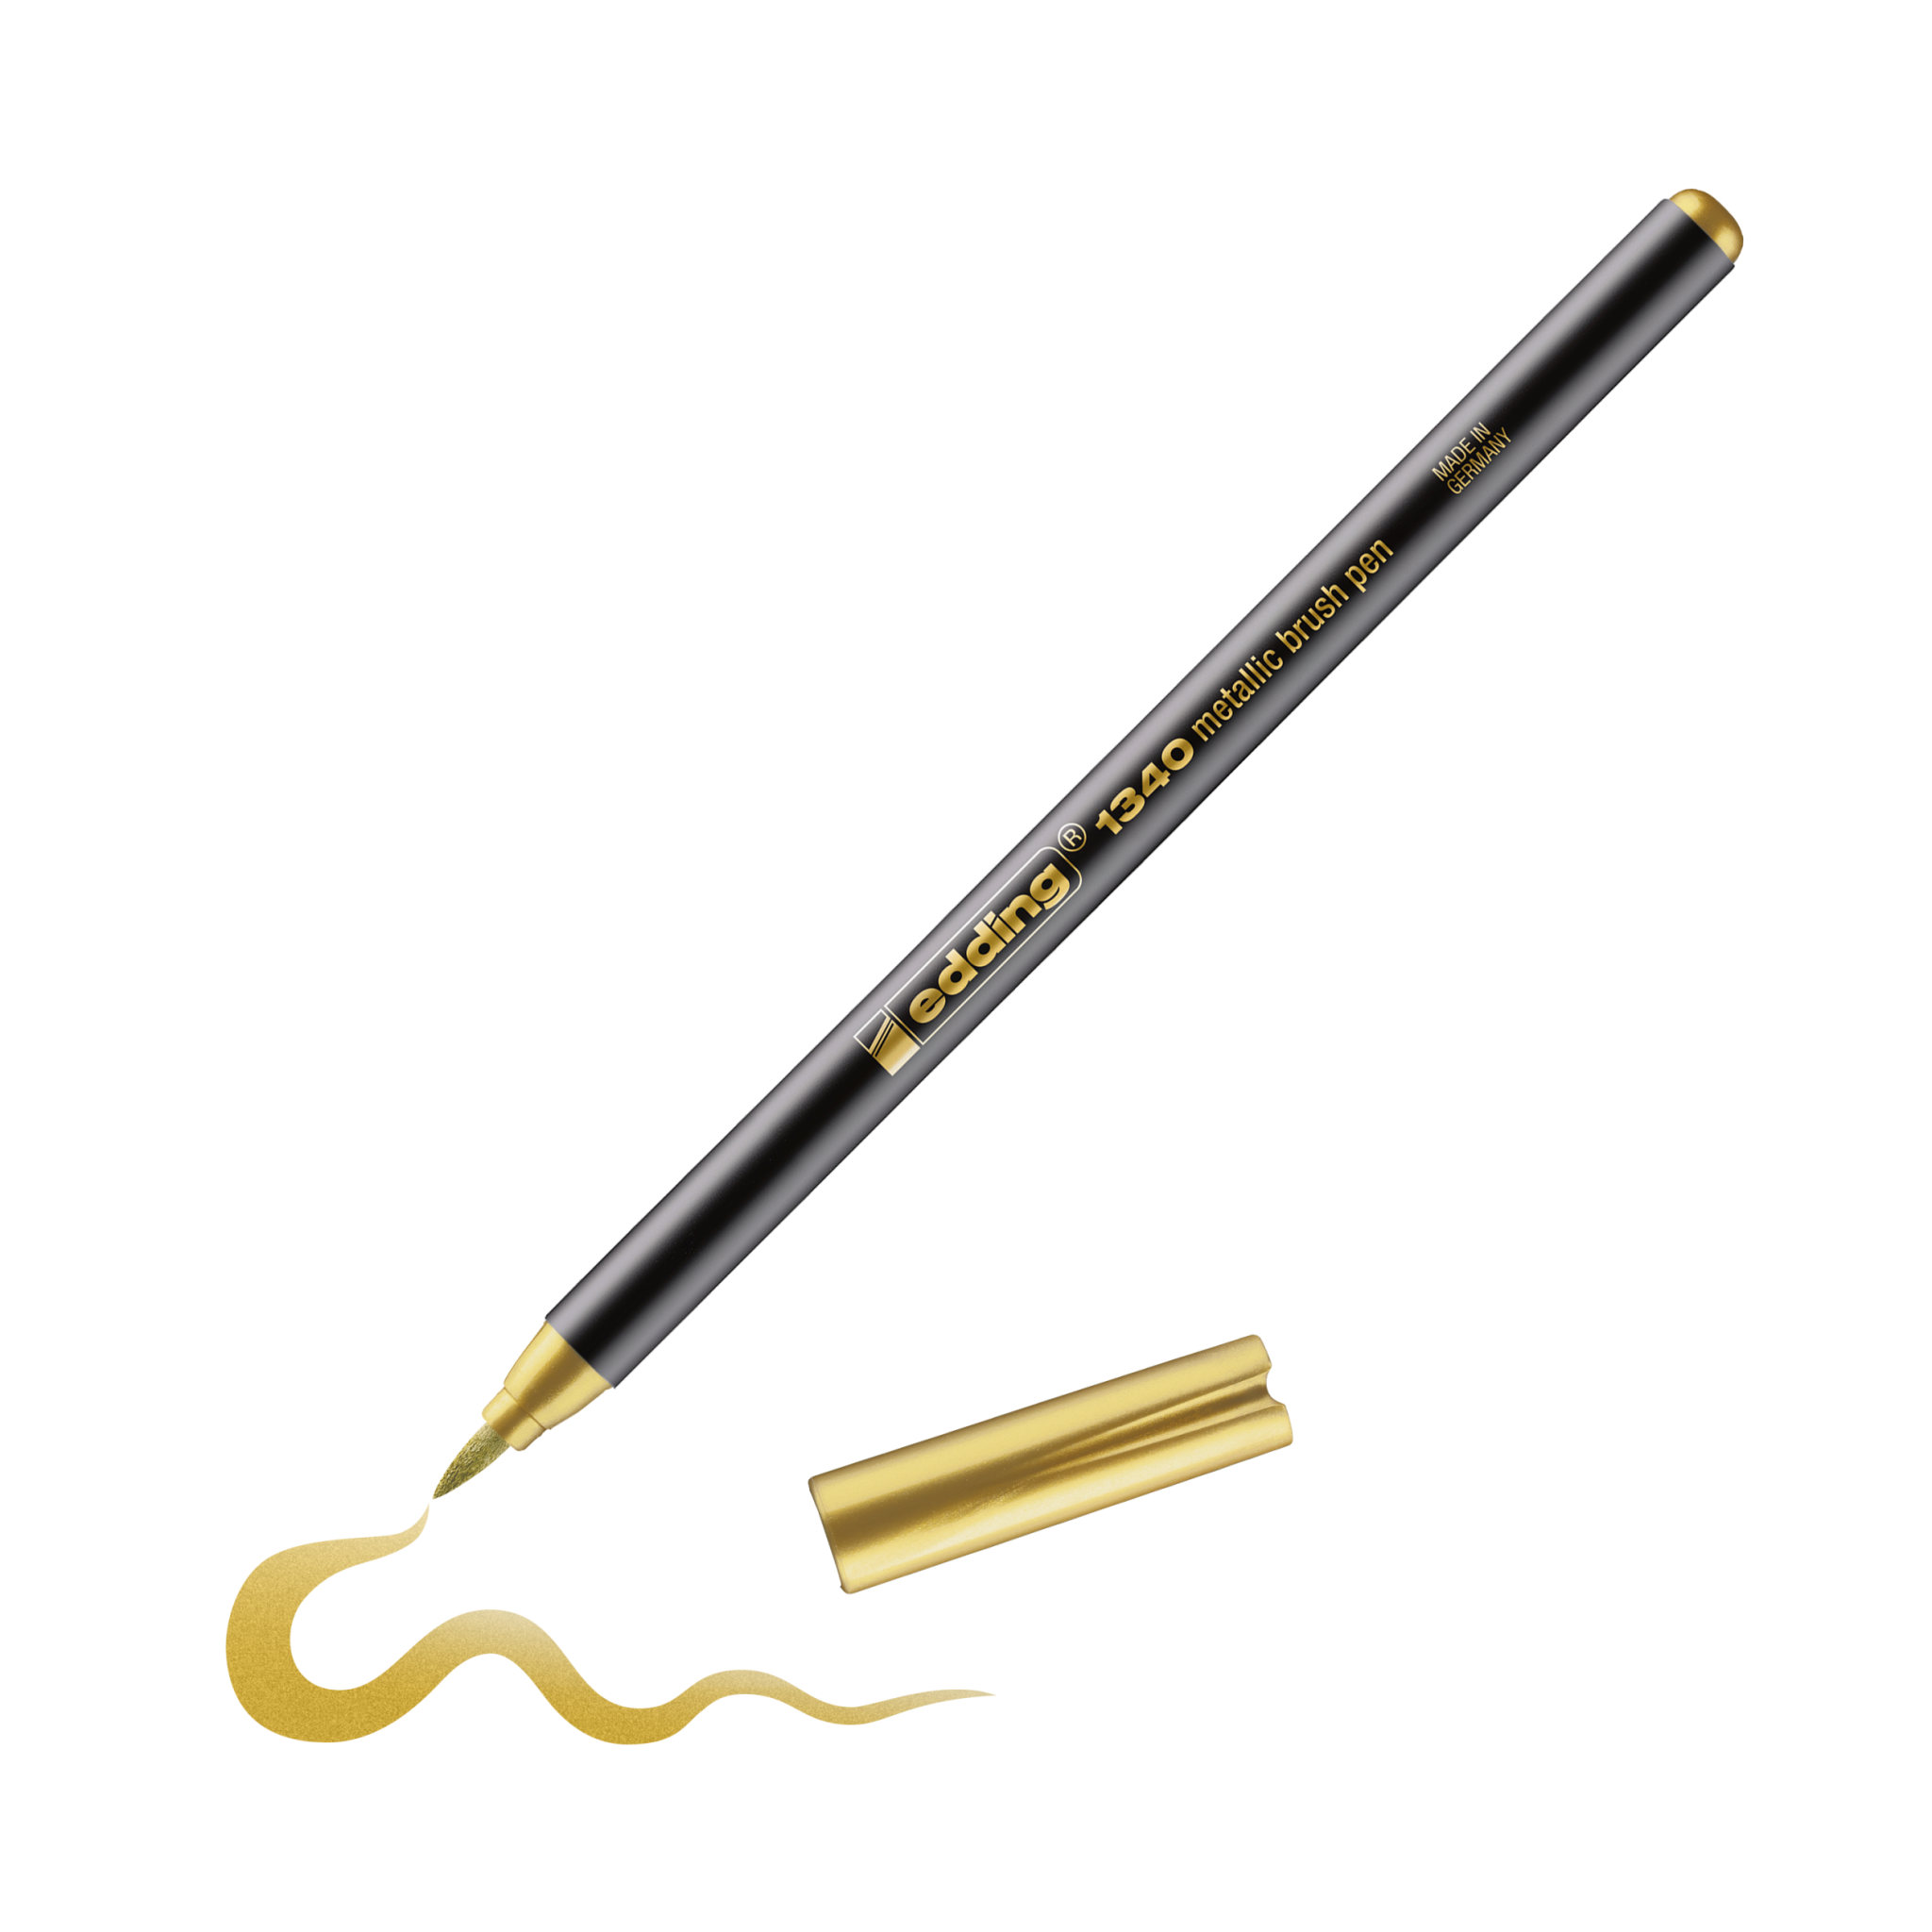 Ein goldener edding 1340 metallic Pinselstift mit abgenommener Kappe, der eine Wellenlinie auf einem schwarzen Hintergrund zeichnet.